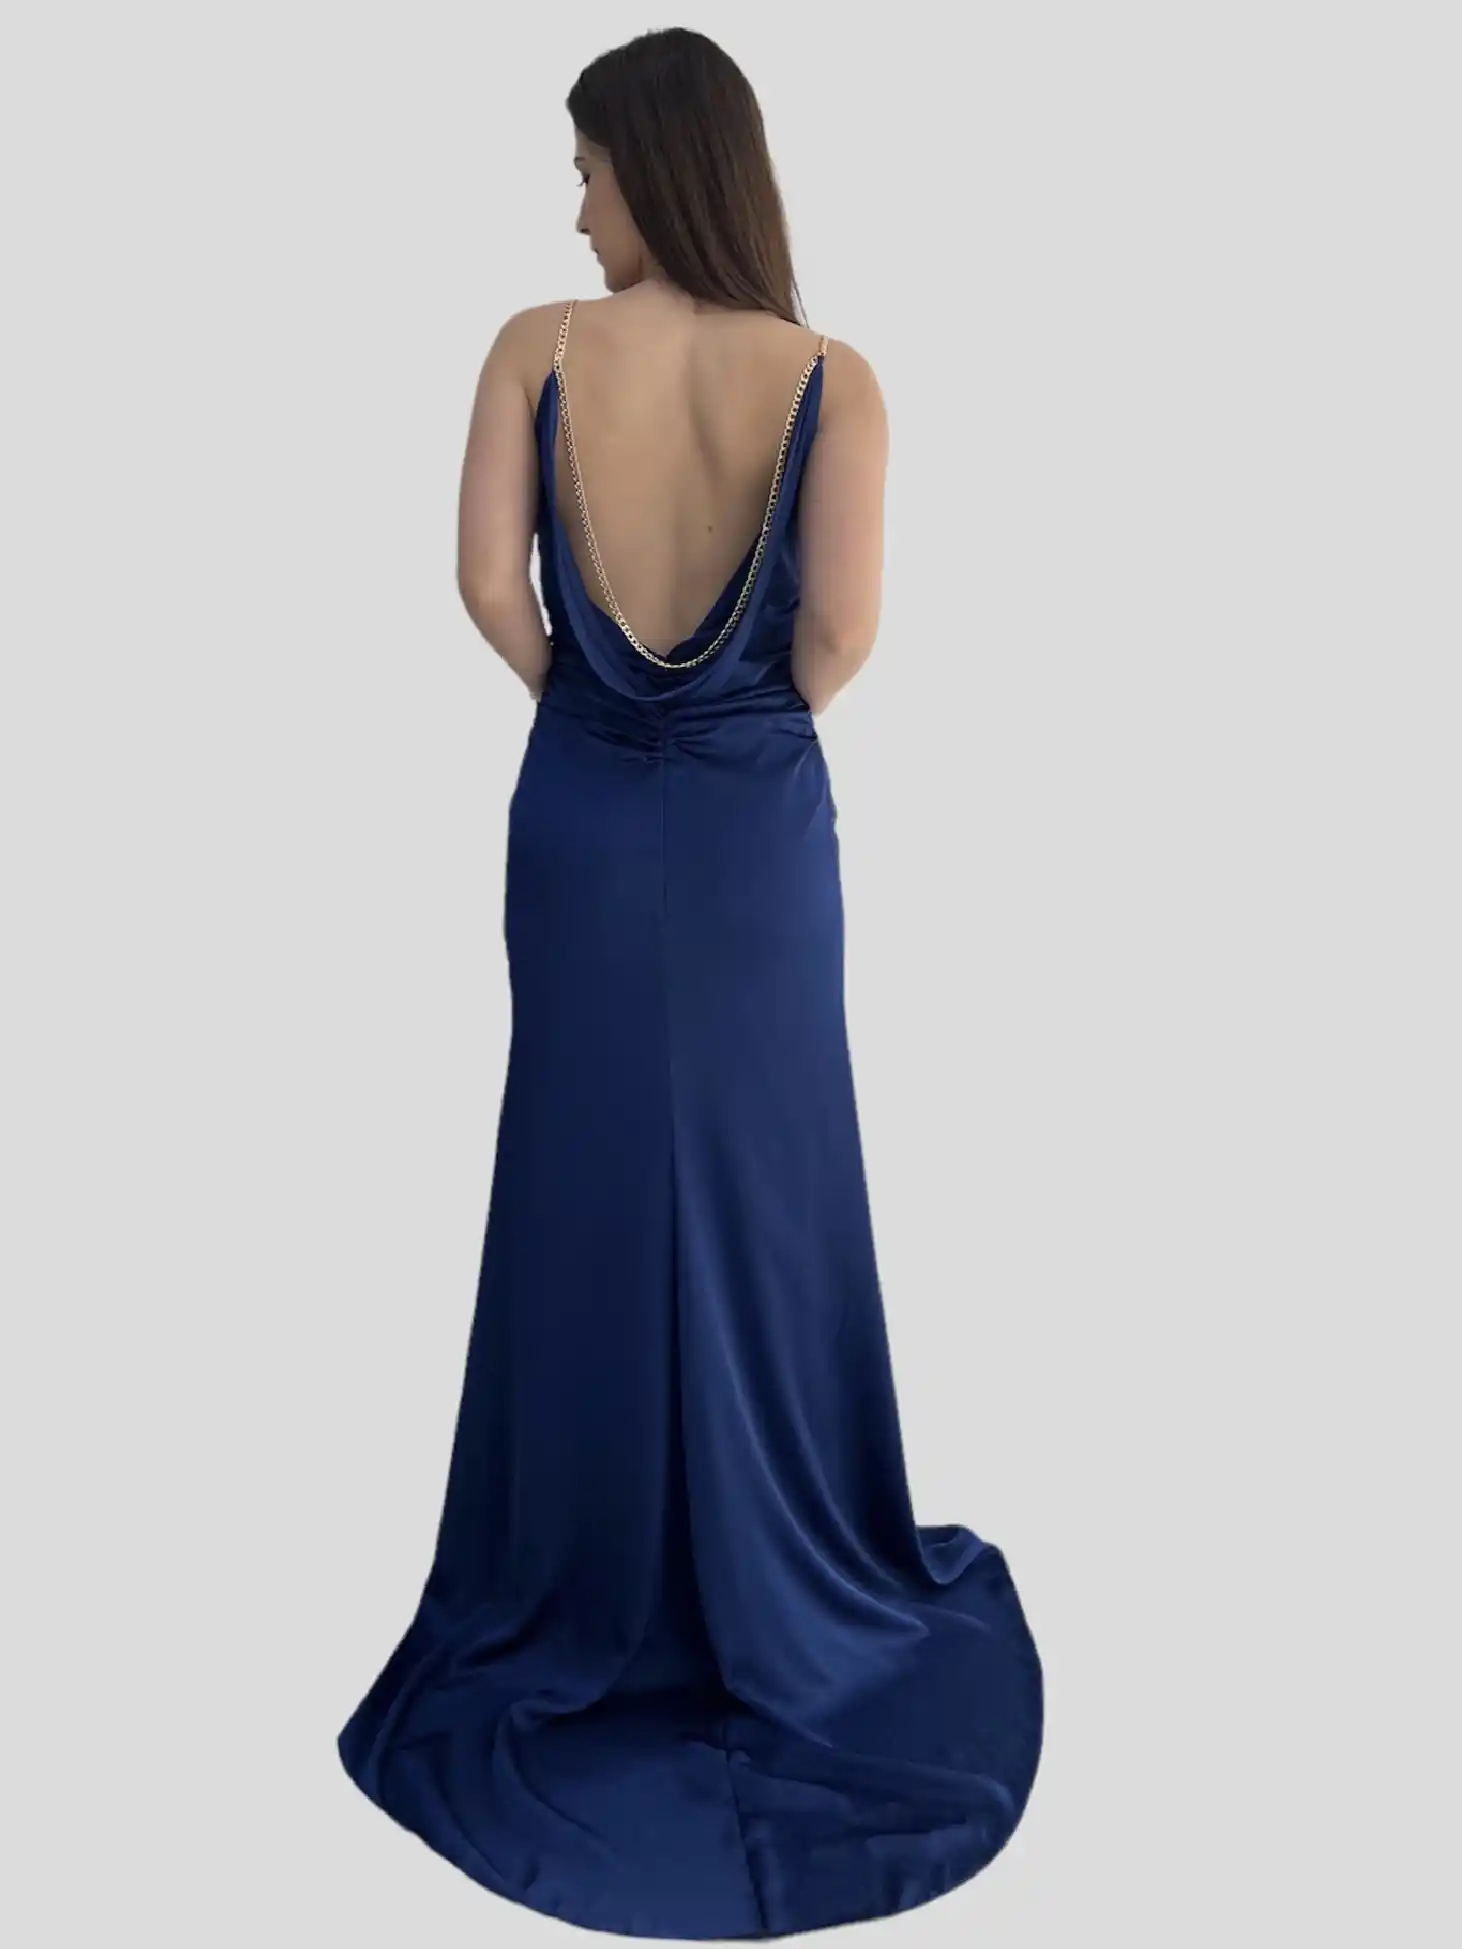 Μπλε σατέν φόρεμα υψηλής ραπτικής